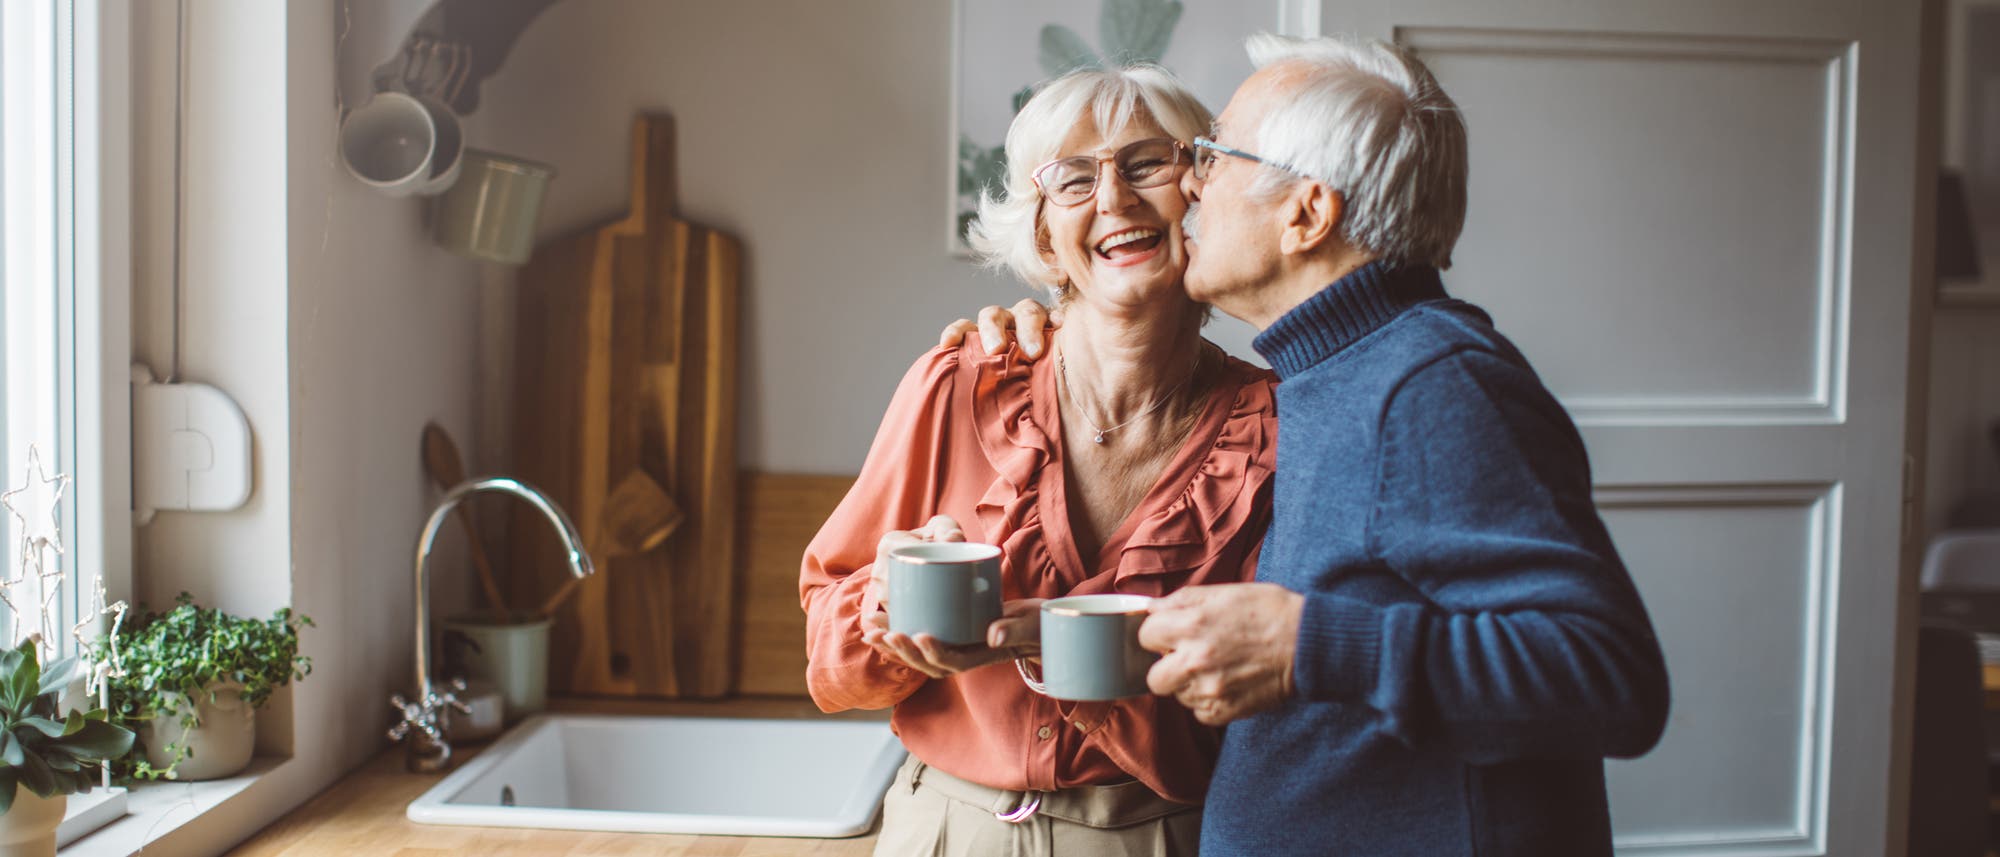 Ein älteres Paar steht zusammen in der Küche mit Tassen in der Hand und der Mann gibt der Frau einen Kuss auf die Wange.